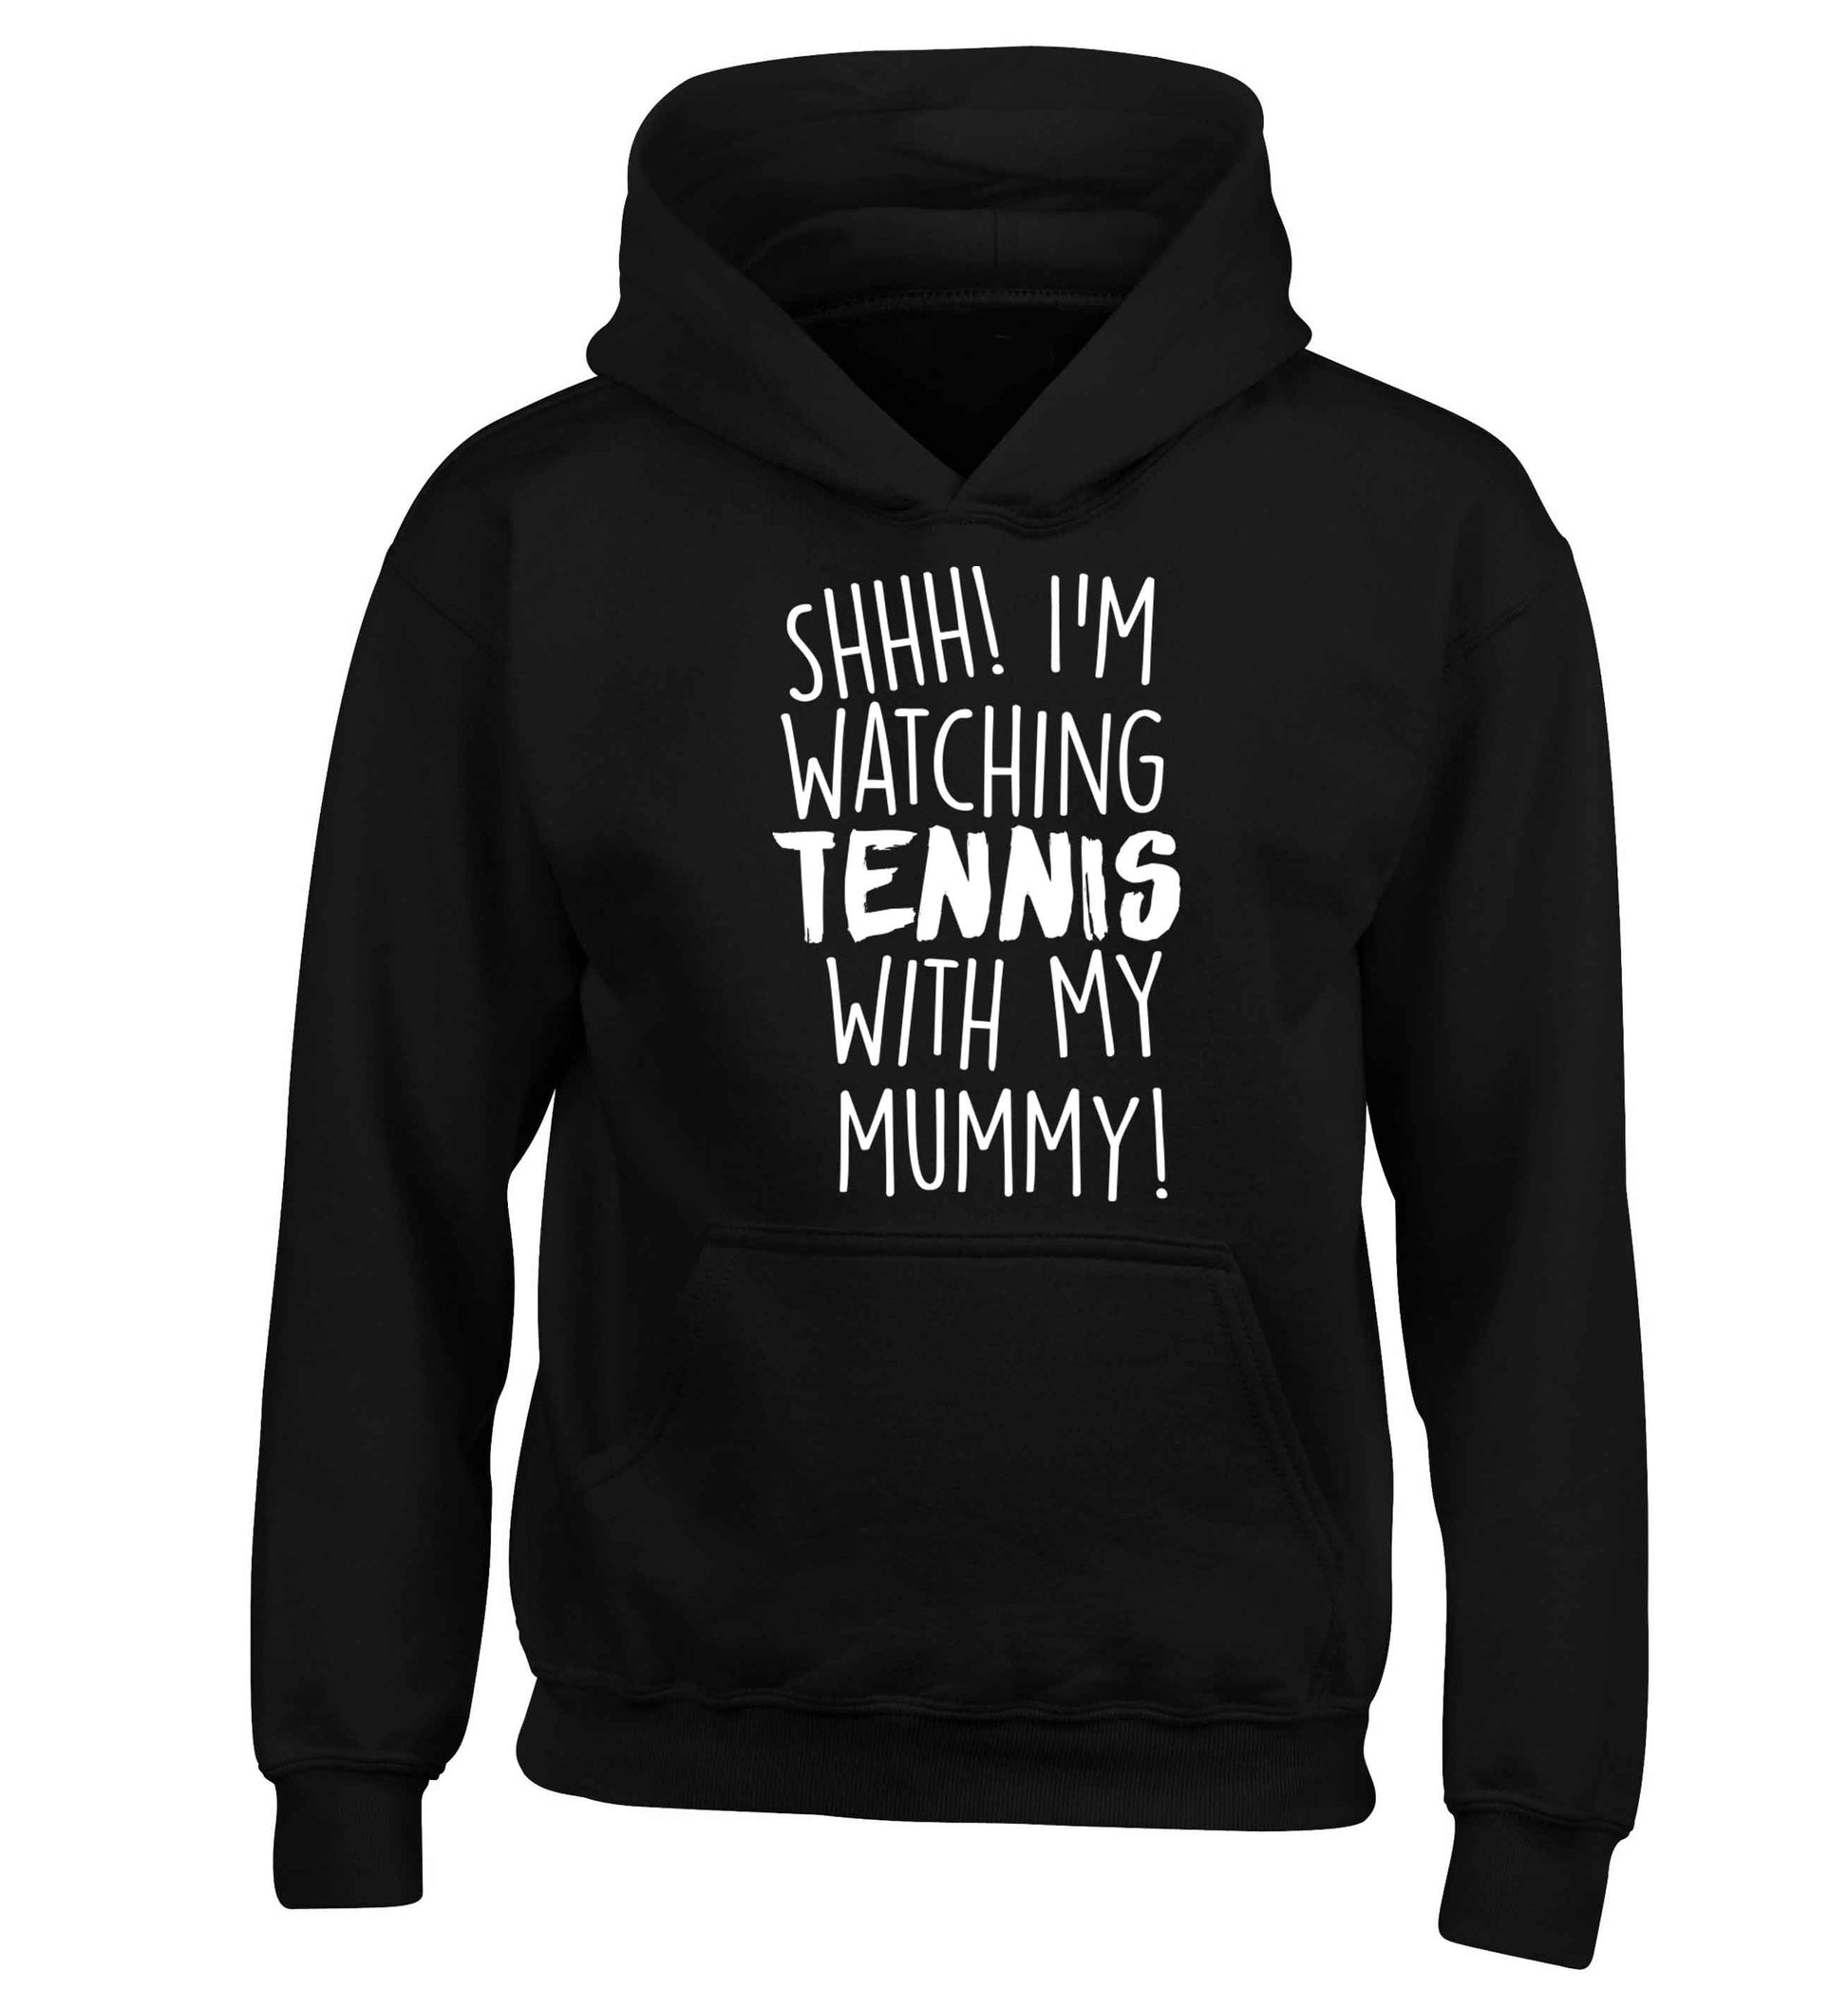 Shh! I'm watching tennis with my mummy! children's black hoodie 12-13 Years